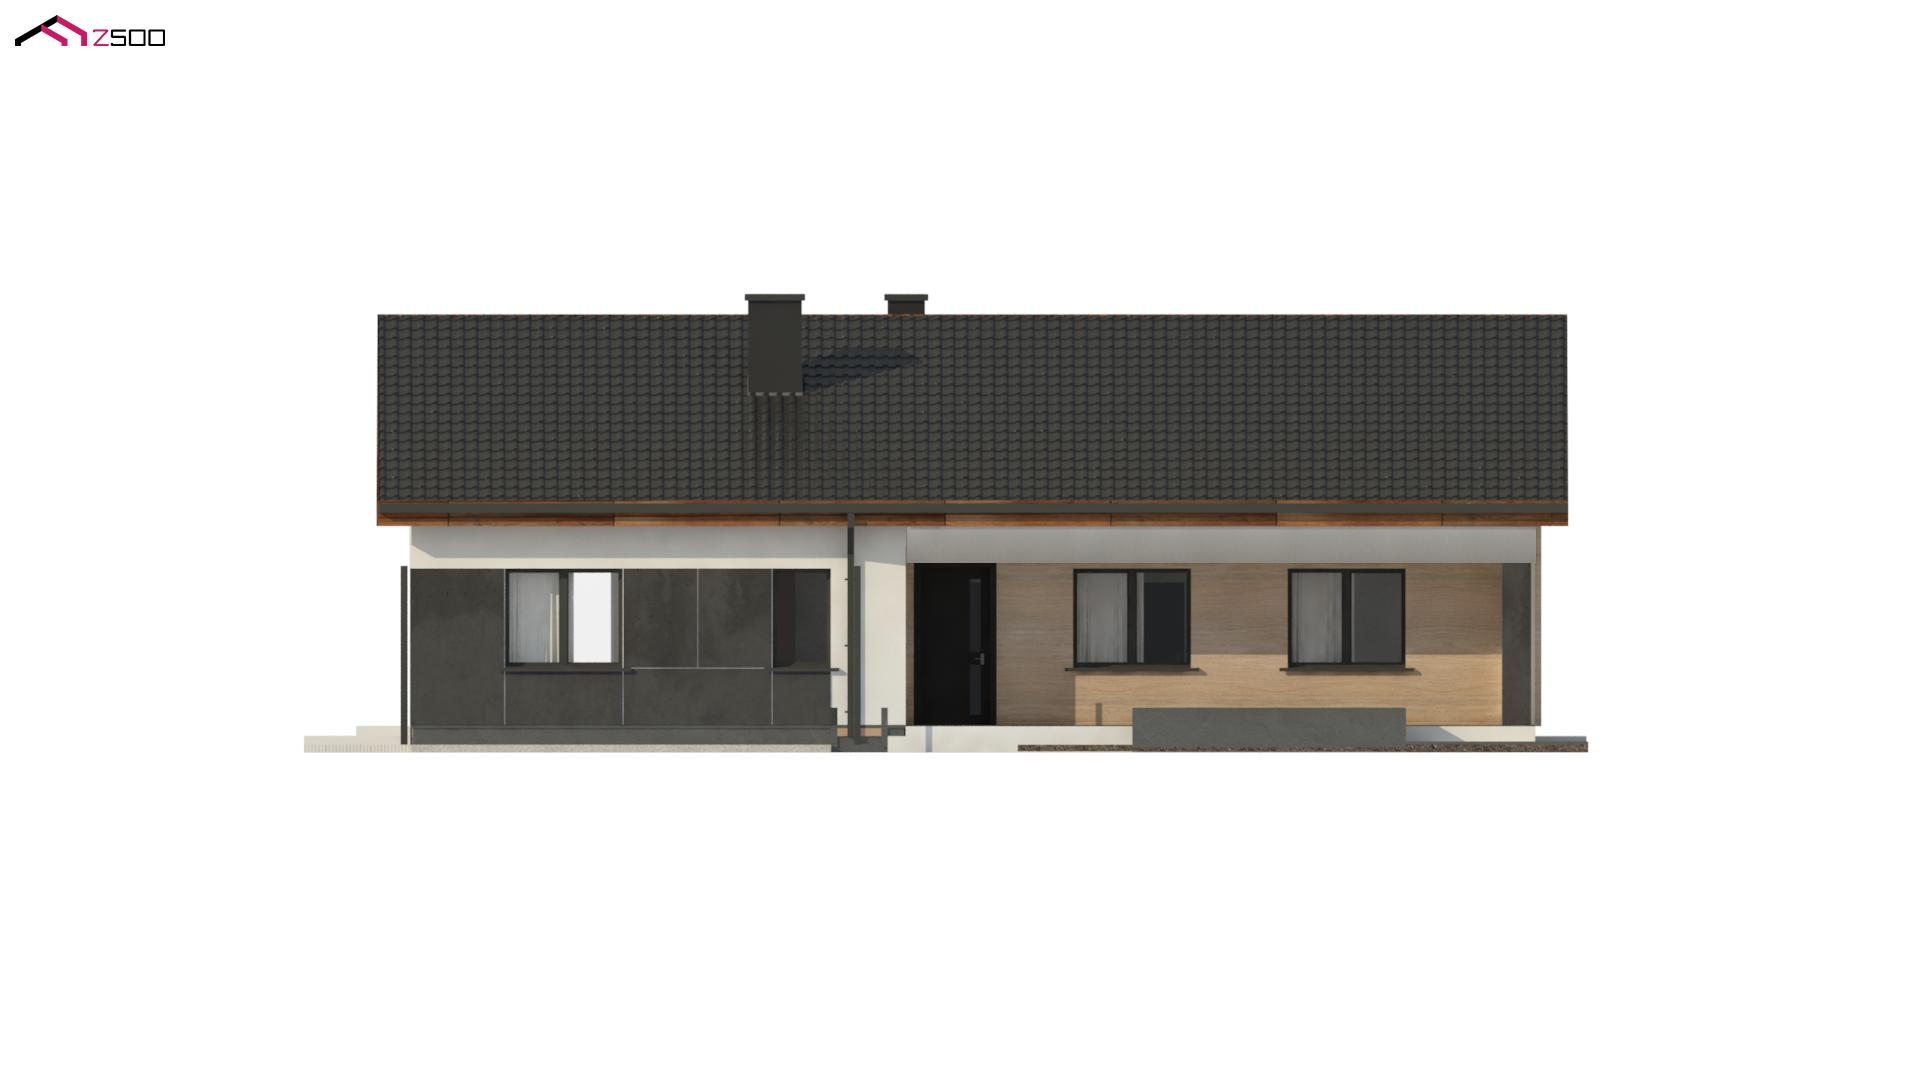 nowoczesny dom parterowy wolnostojący zadaszenie biały czarny dach drewniane wykończenie prostokątny